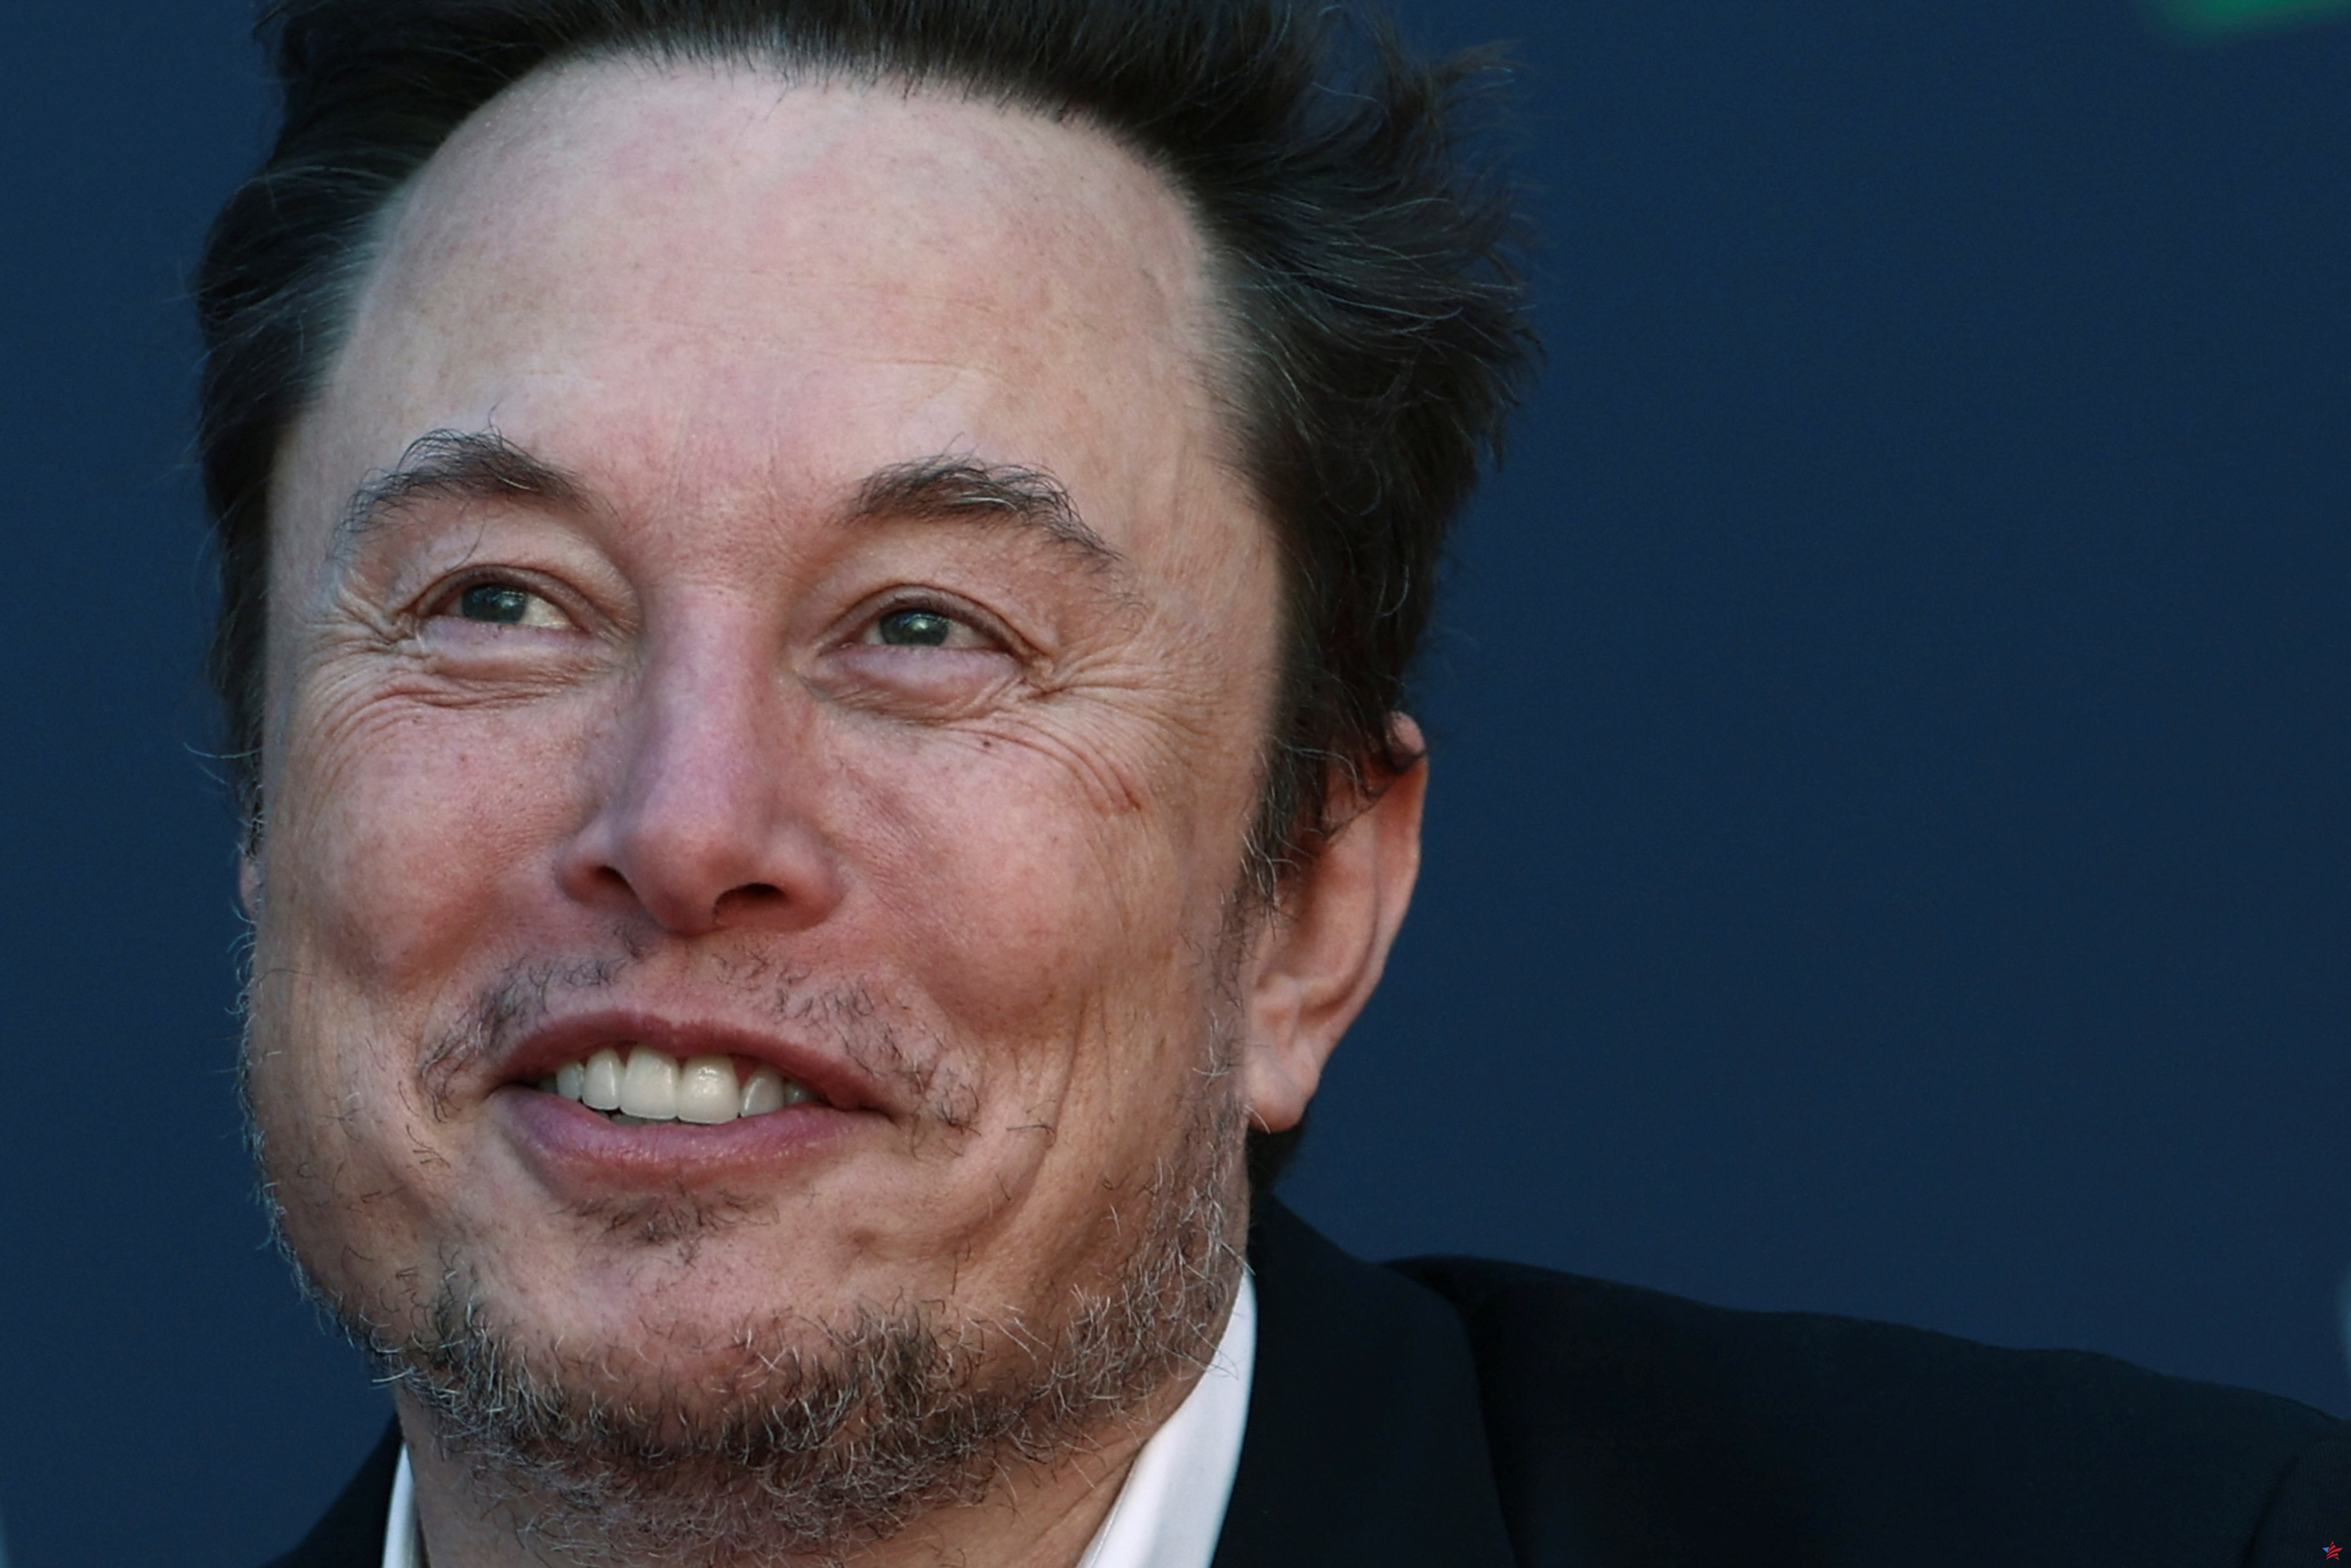 LSD, cocaína, éxtasis... El consumo de drogas de Elon Musk preocupa a los ejecutivos de Tesla y SpaceX